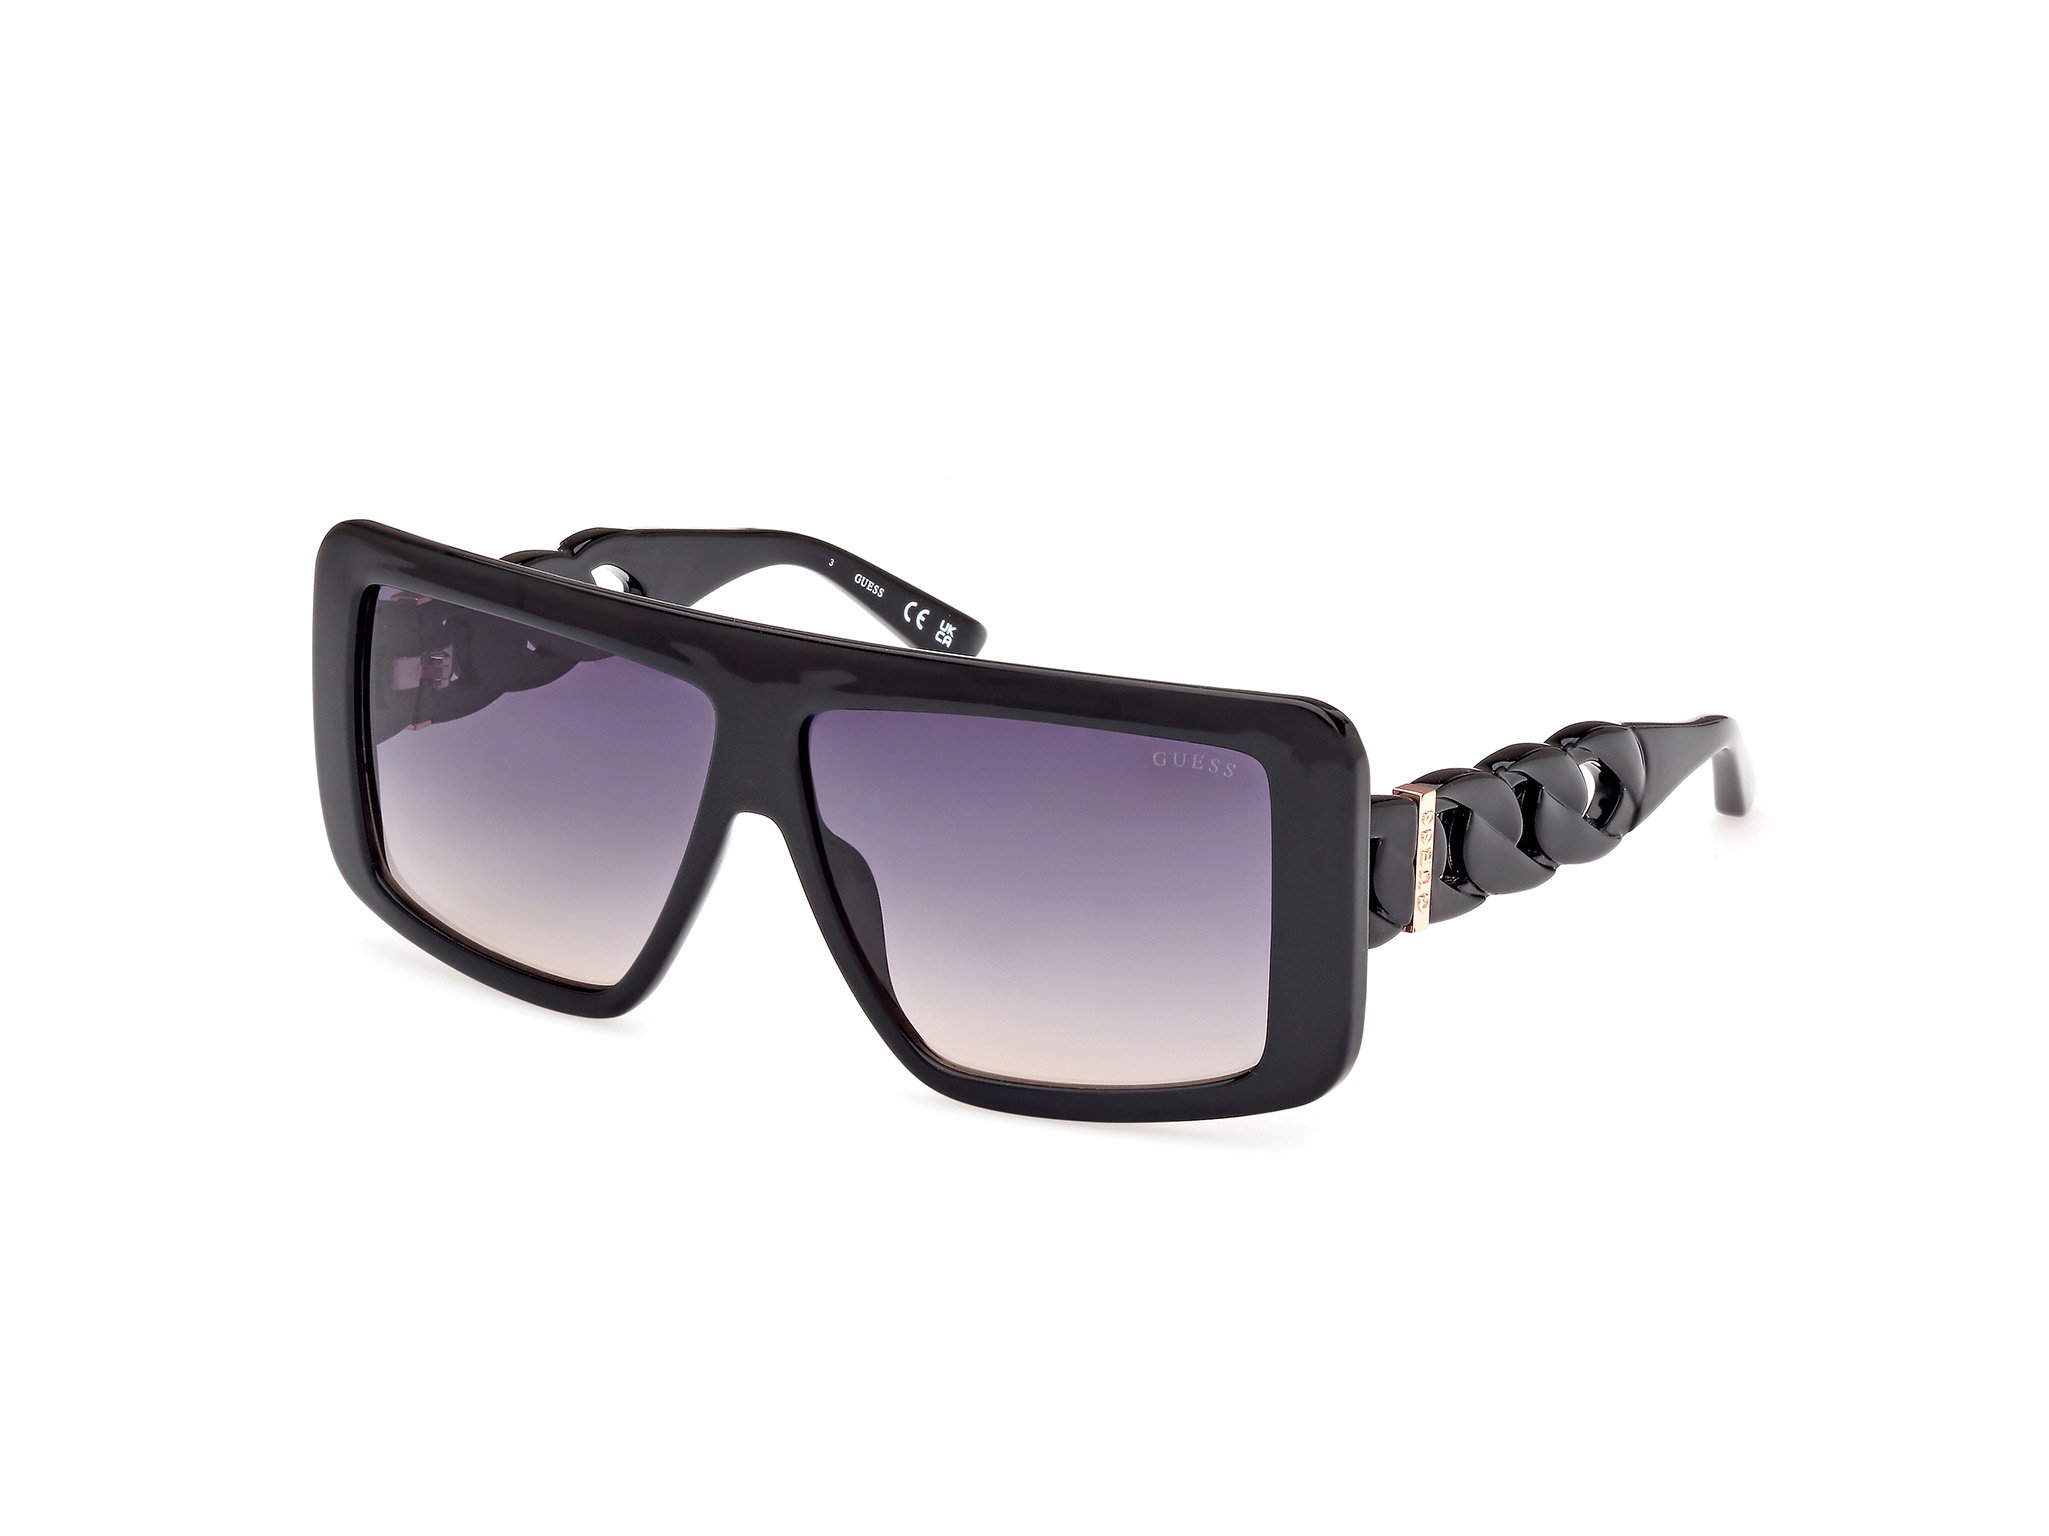 Das Bild zeigt die Sonnenbrille GU00109 01B von der Marke Guess in Schwarz.